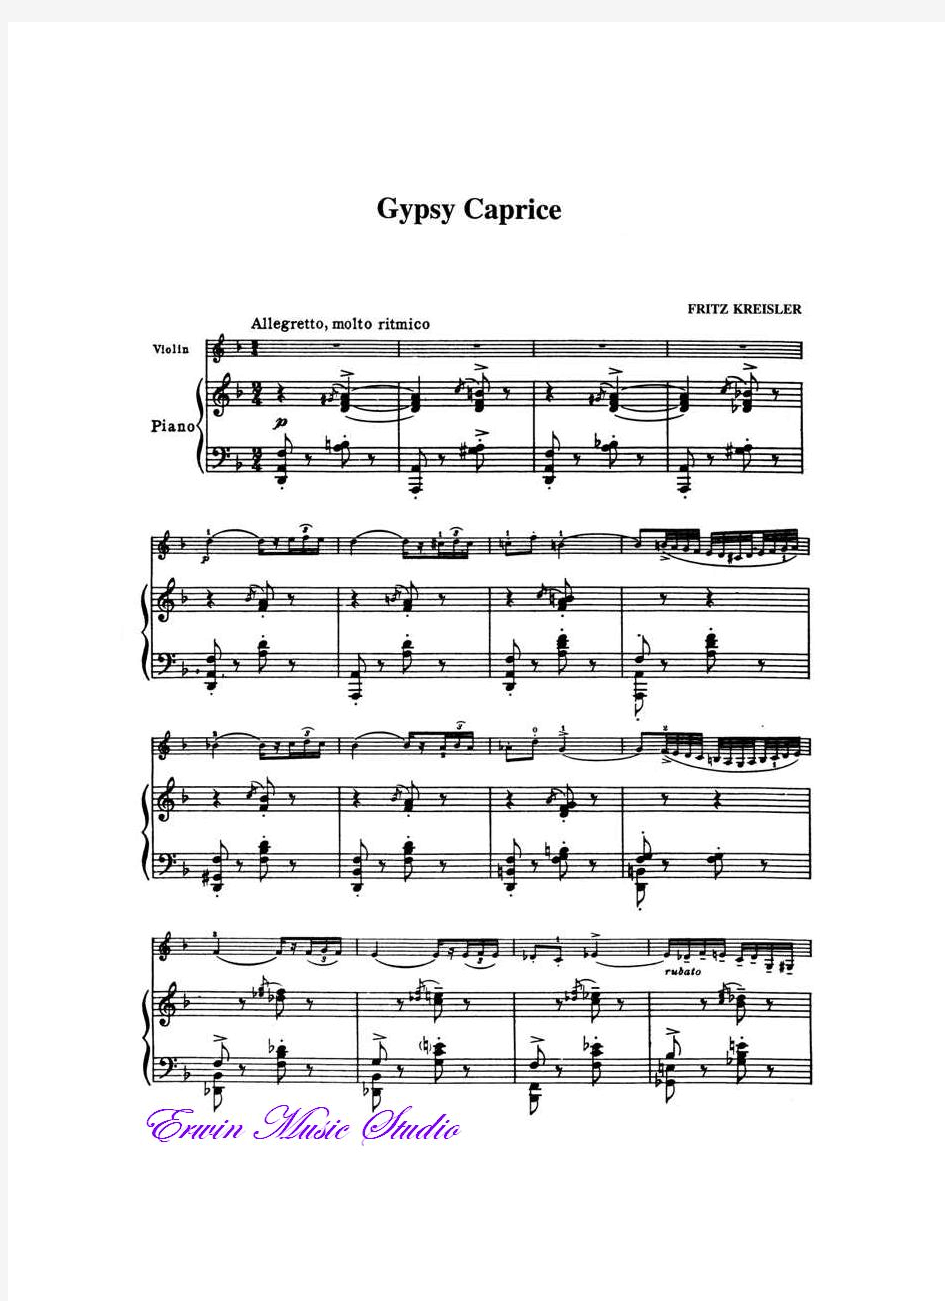 Piano克莱斯勒《吉普赛随想曲》小提琴曲谱 钢琴伴奏曲谱GypsyCaprice